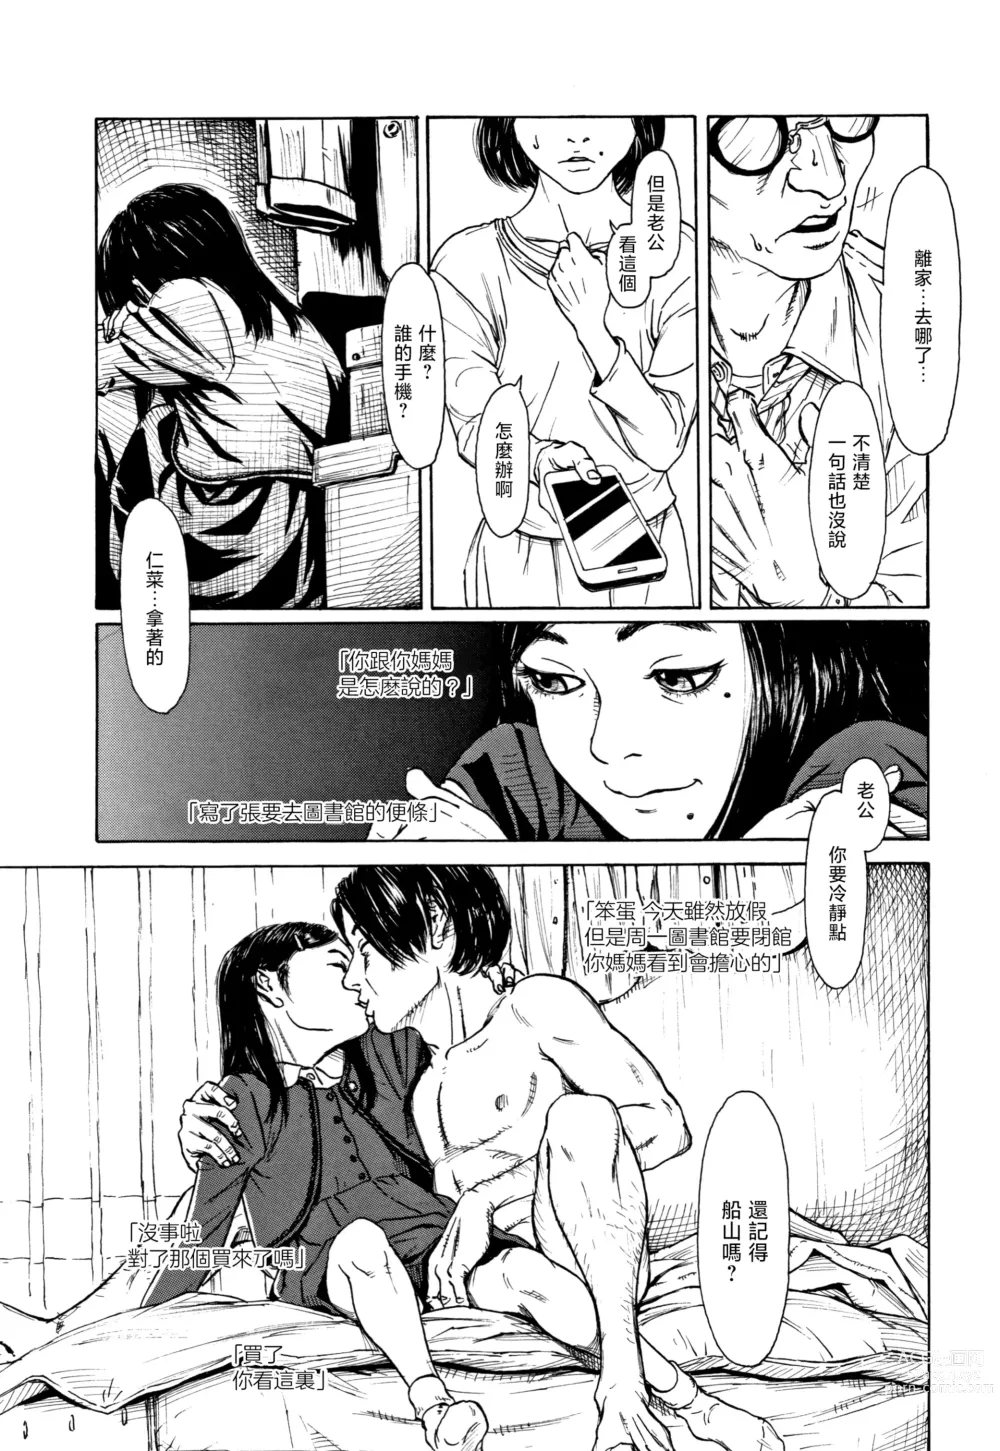 Page 5 of manga Zasikirou no Yurikago